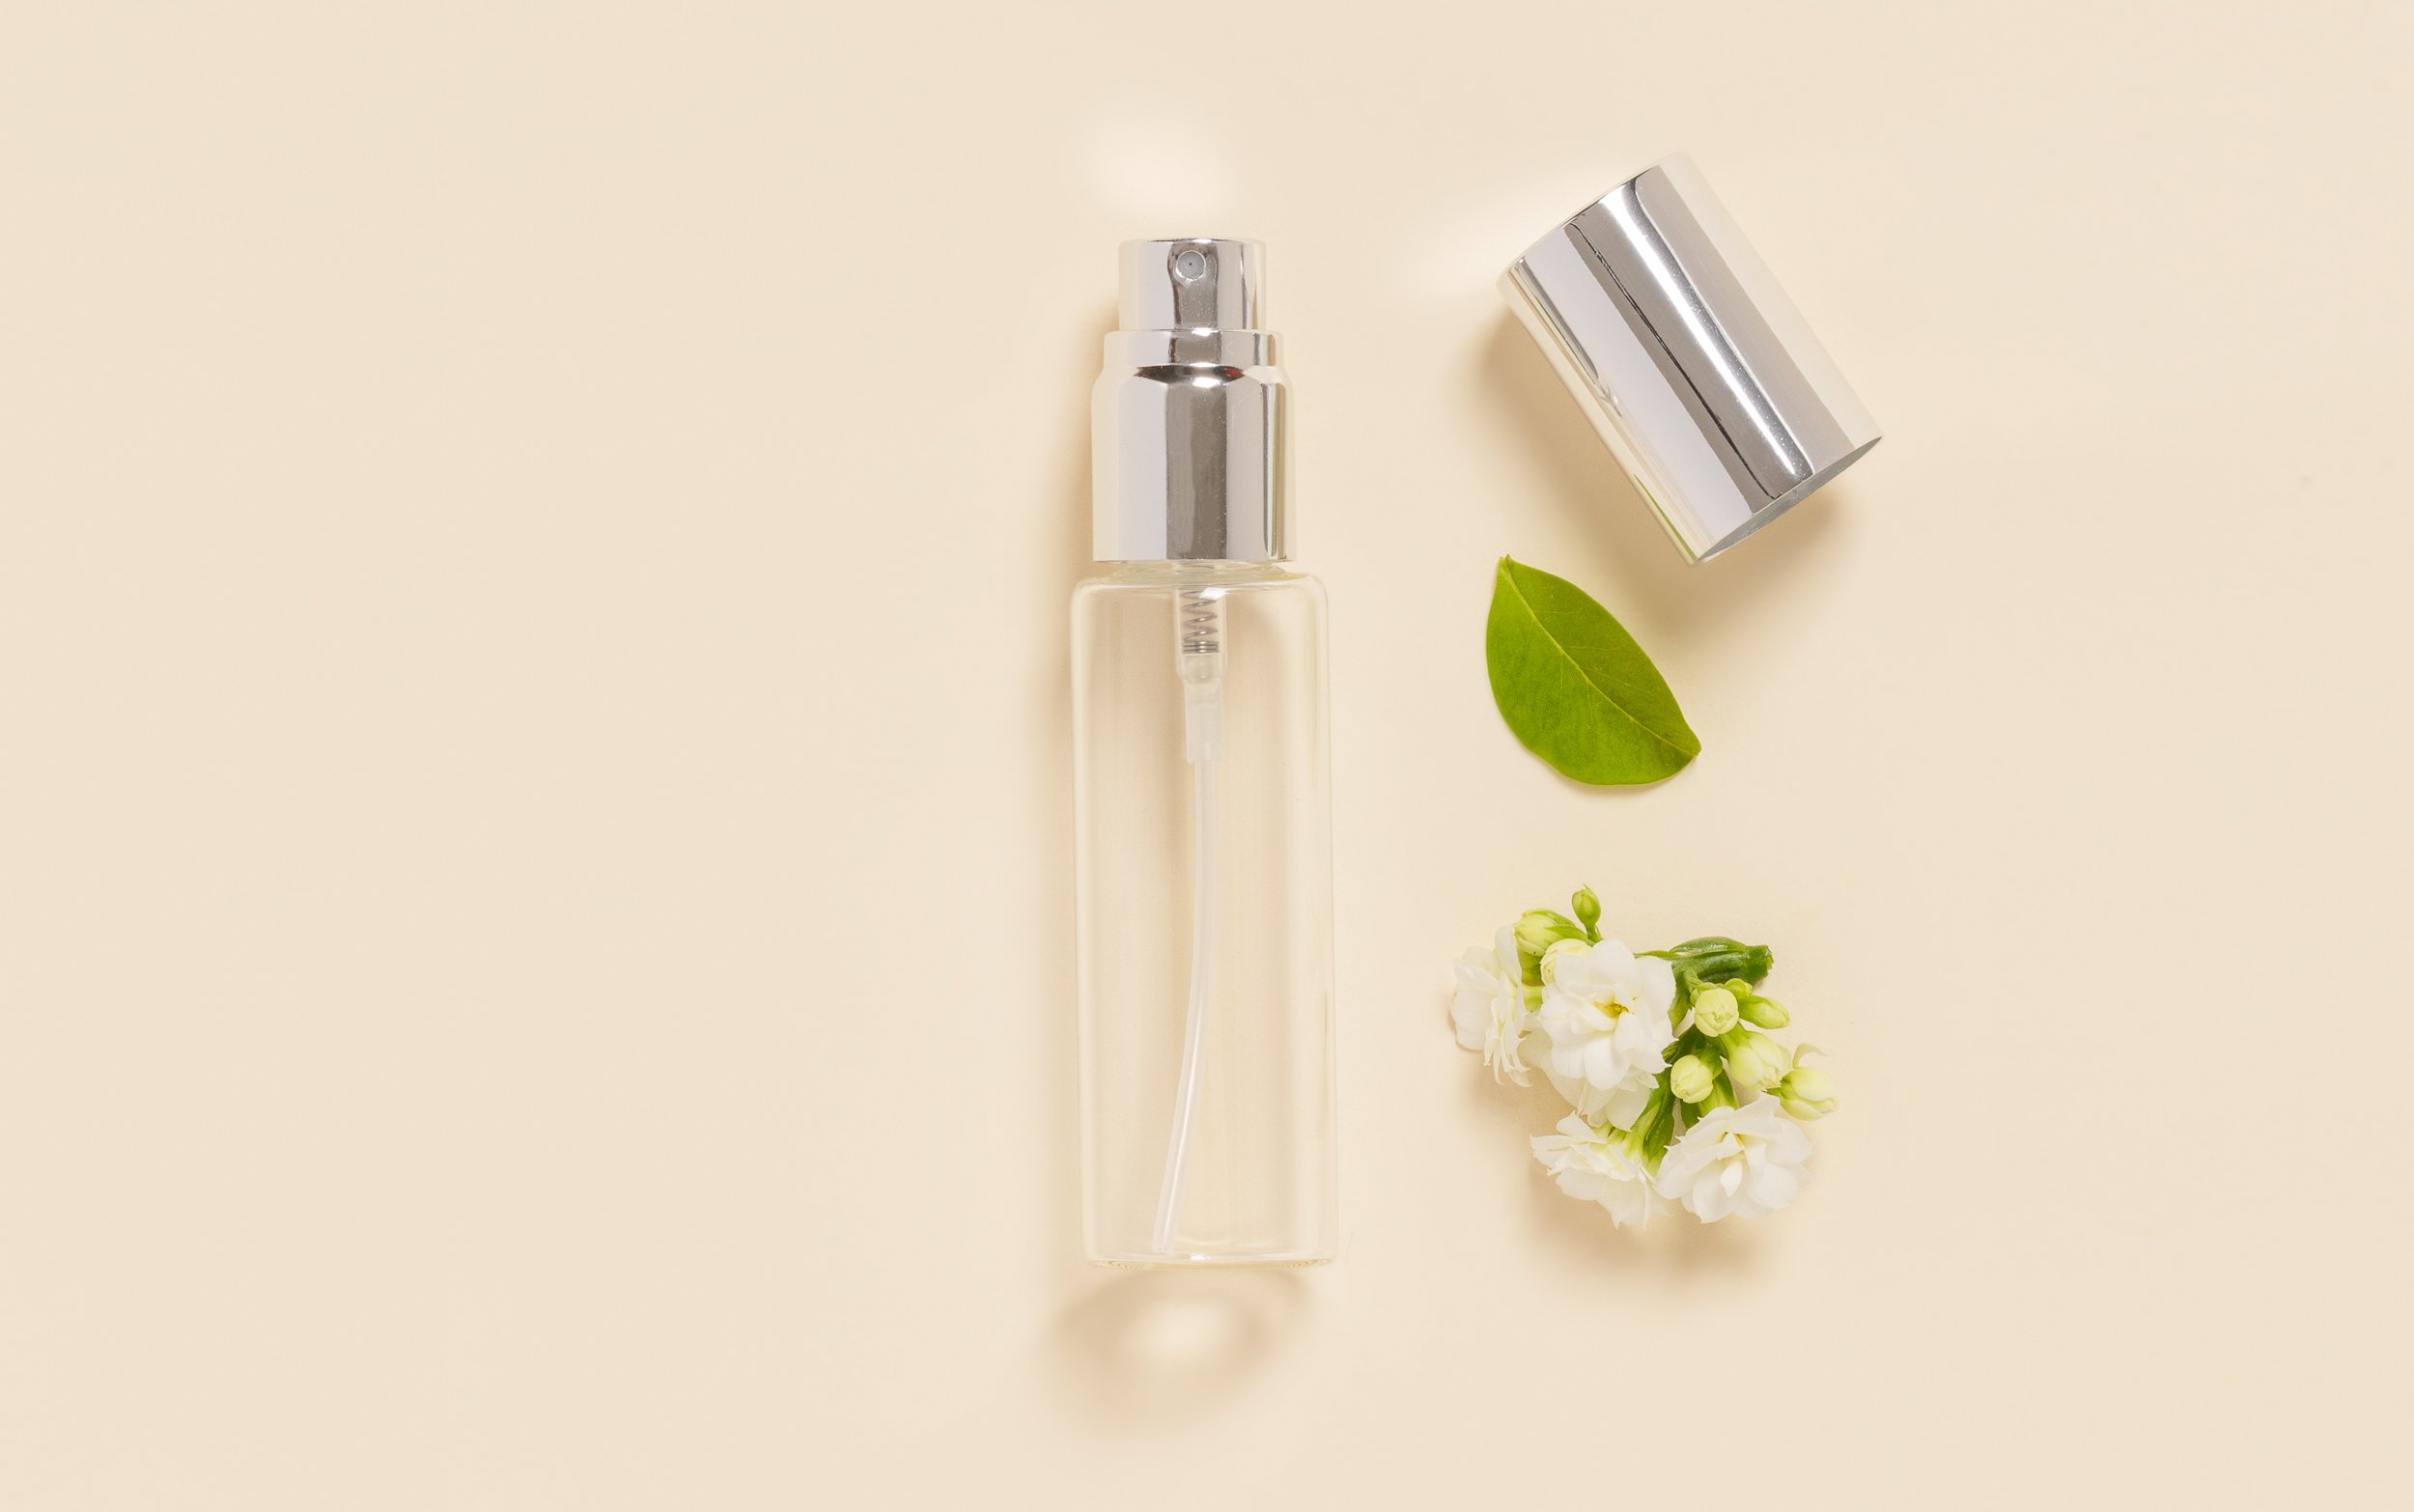 50ml Flacon Bouteille Parfum Cristal Verre Vaporisateur Atomiseur